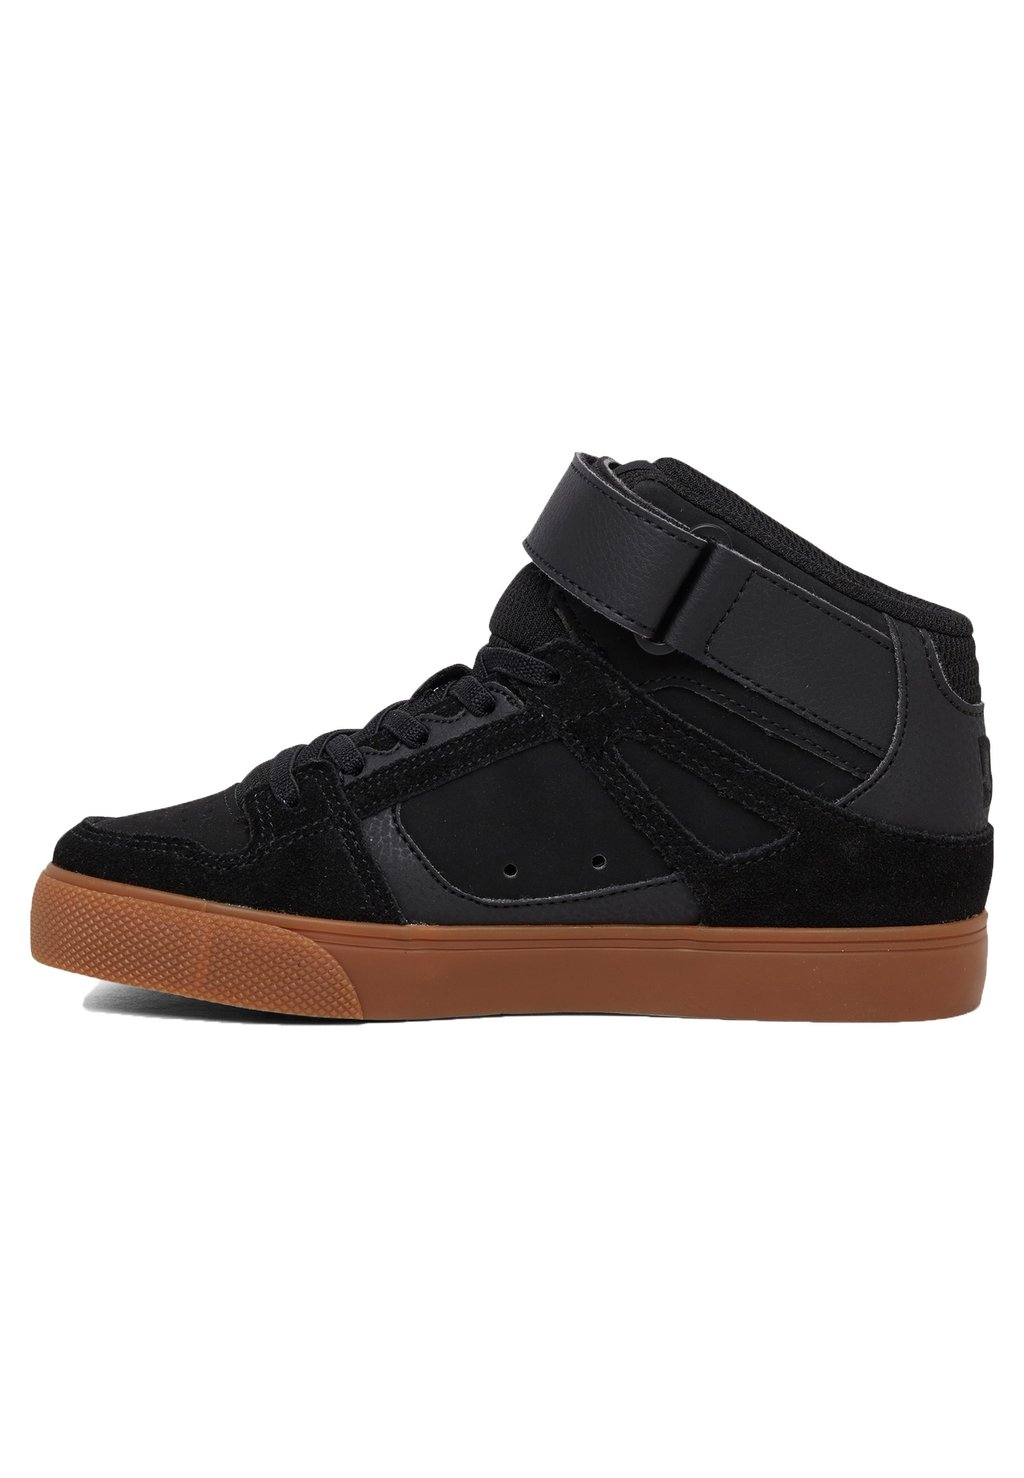 Низкие кроссовки DC Shoes, резинка bgm черная кроссовки dc reach цвет black black gum